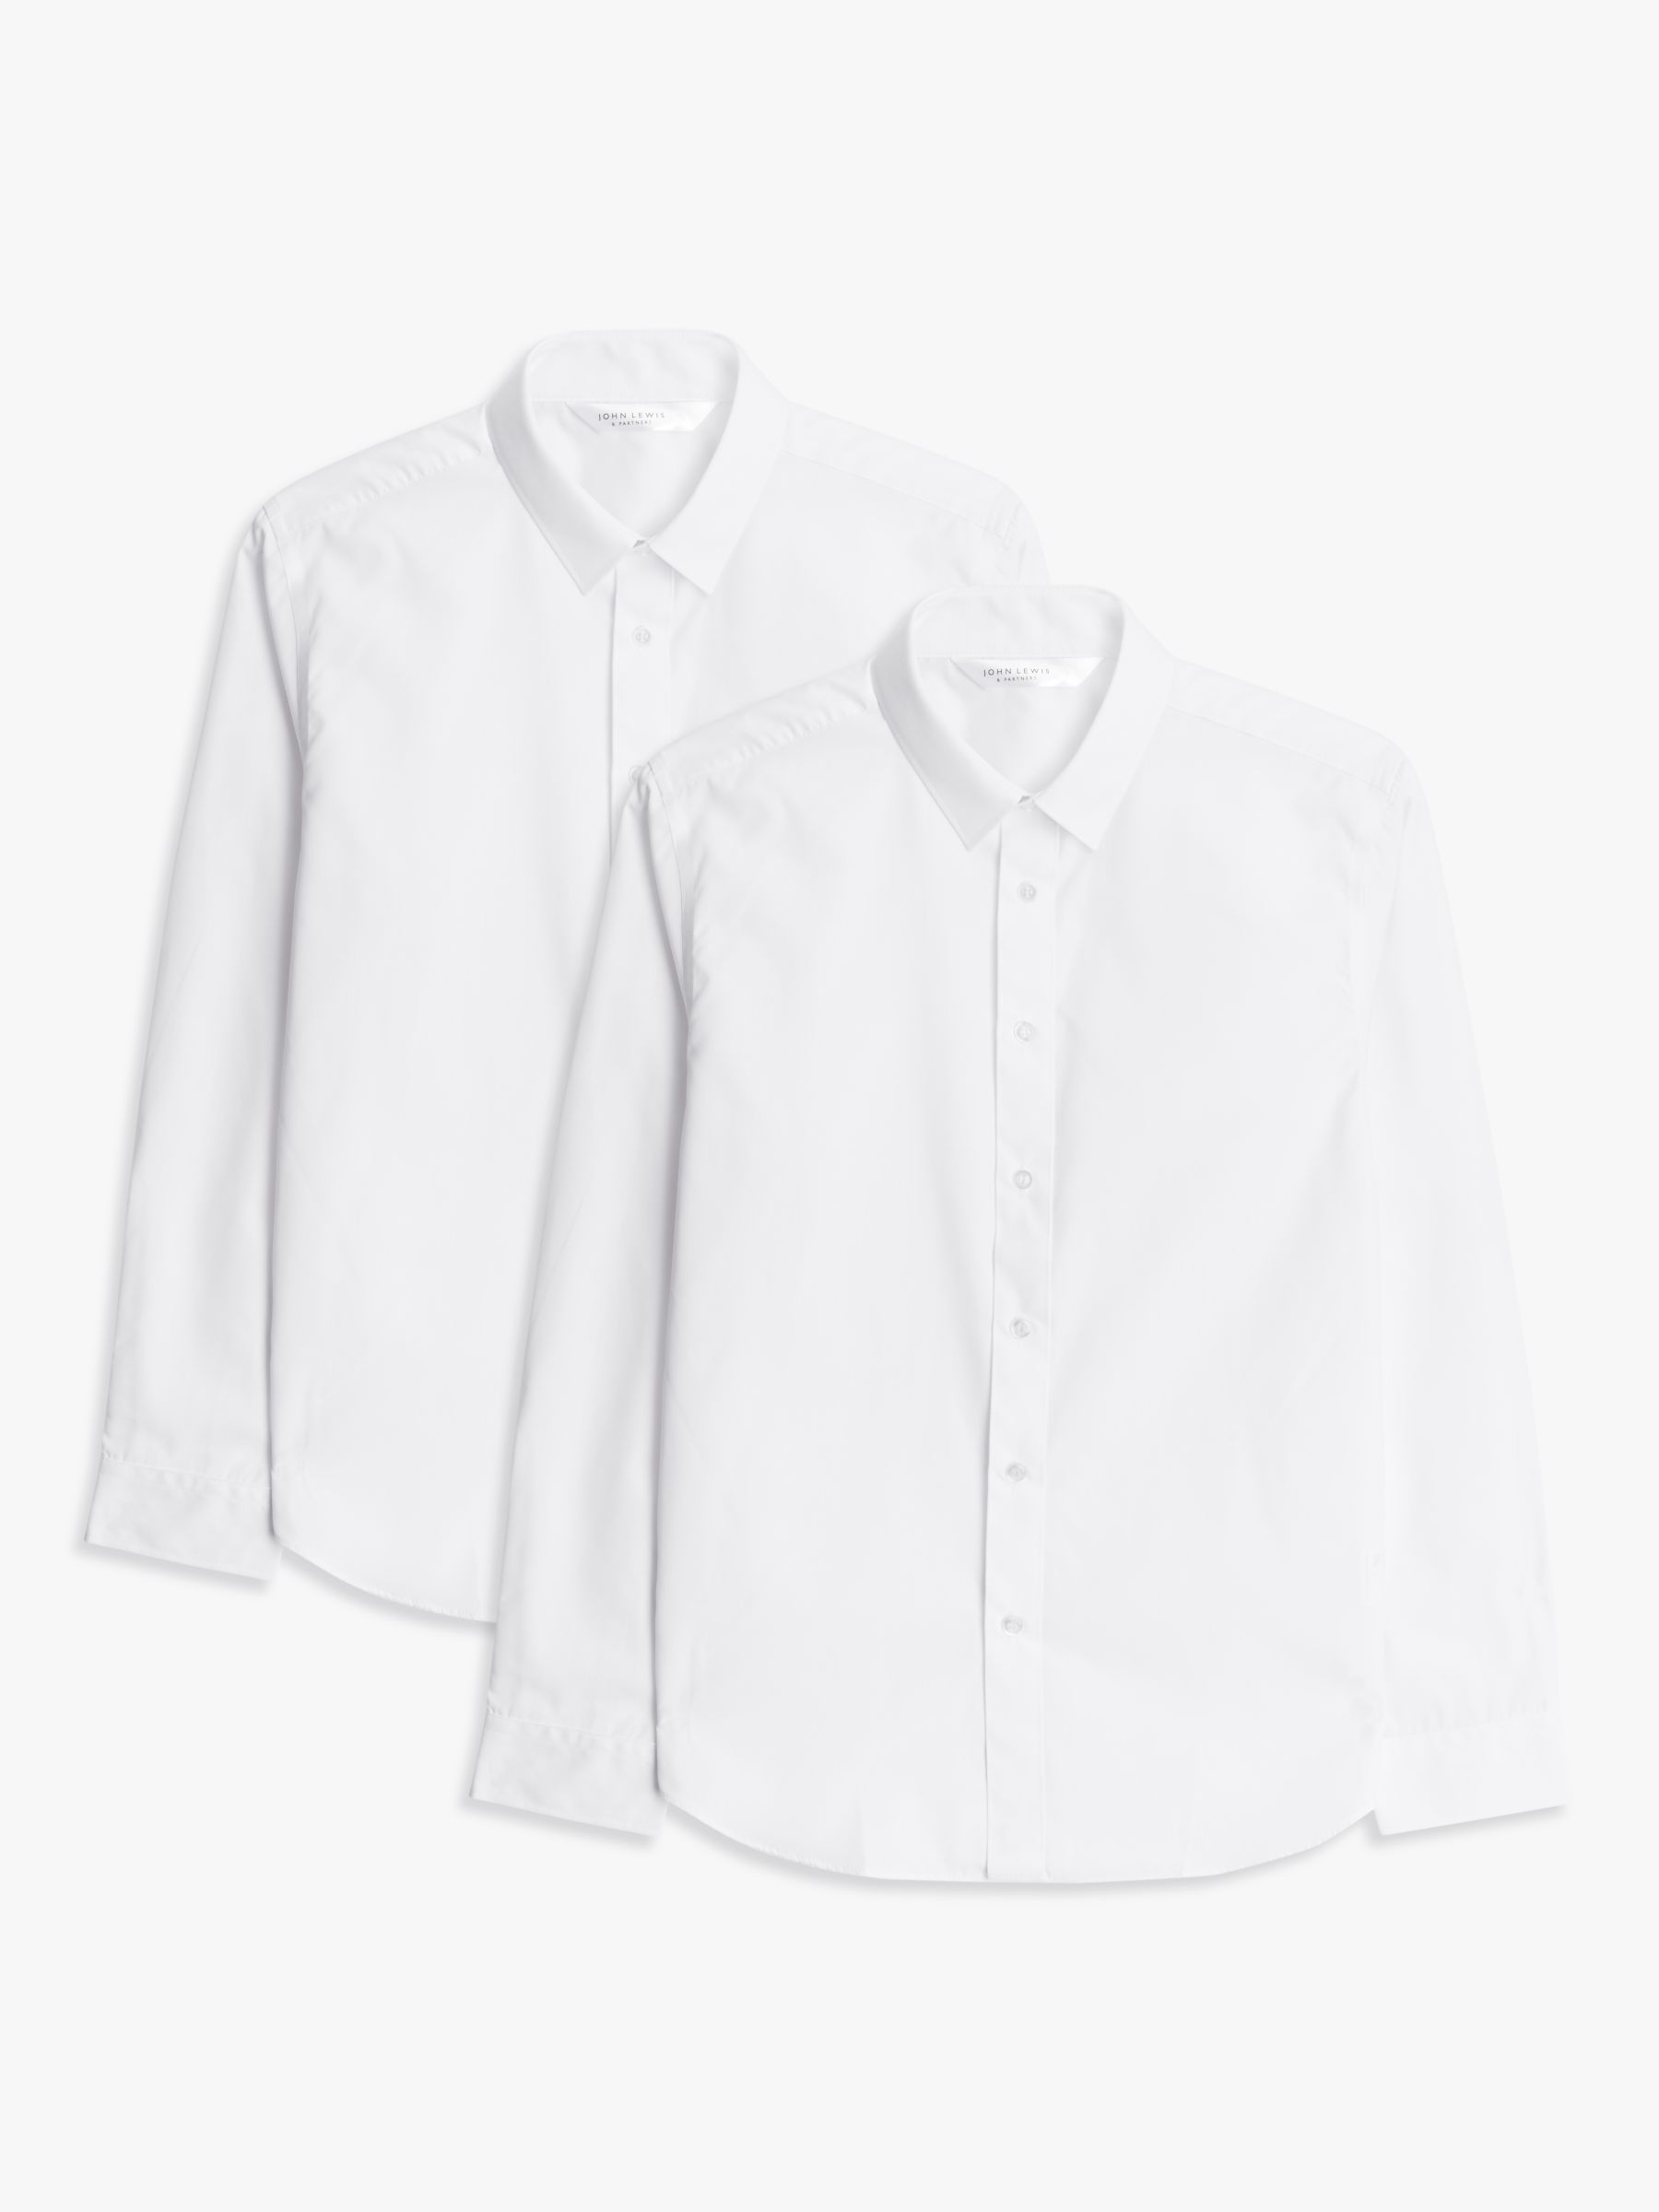 John Lewis Girls' Slim Fit Long Sleeve School Shirt, Pack of 2